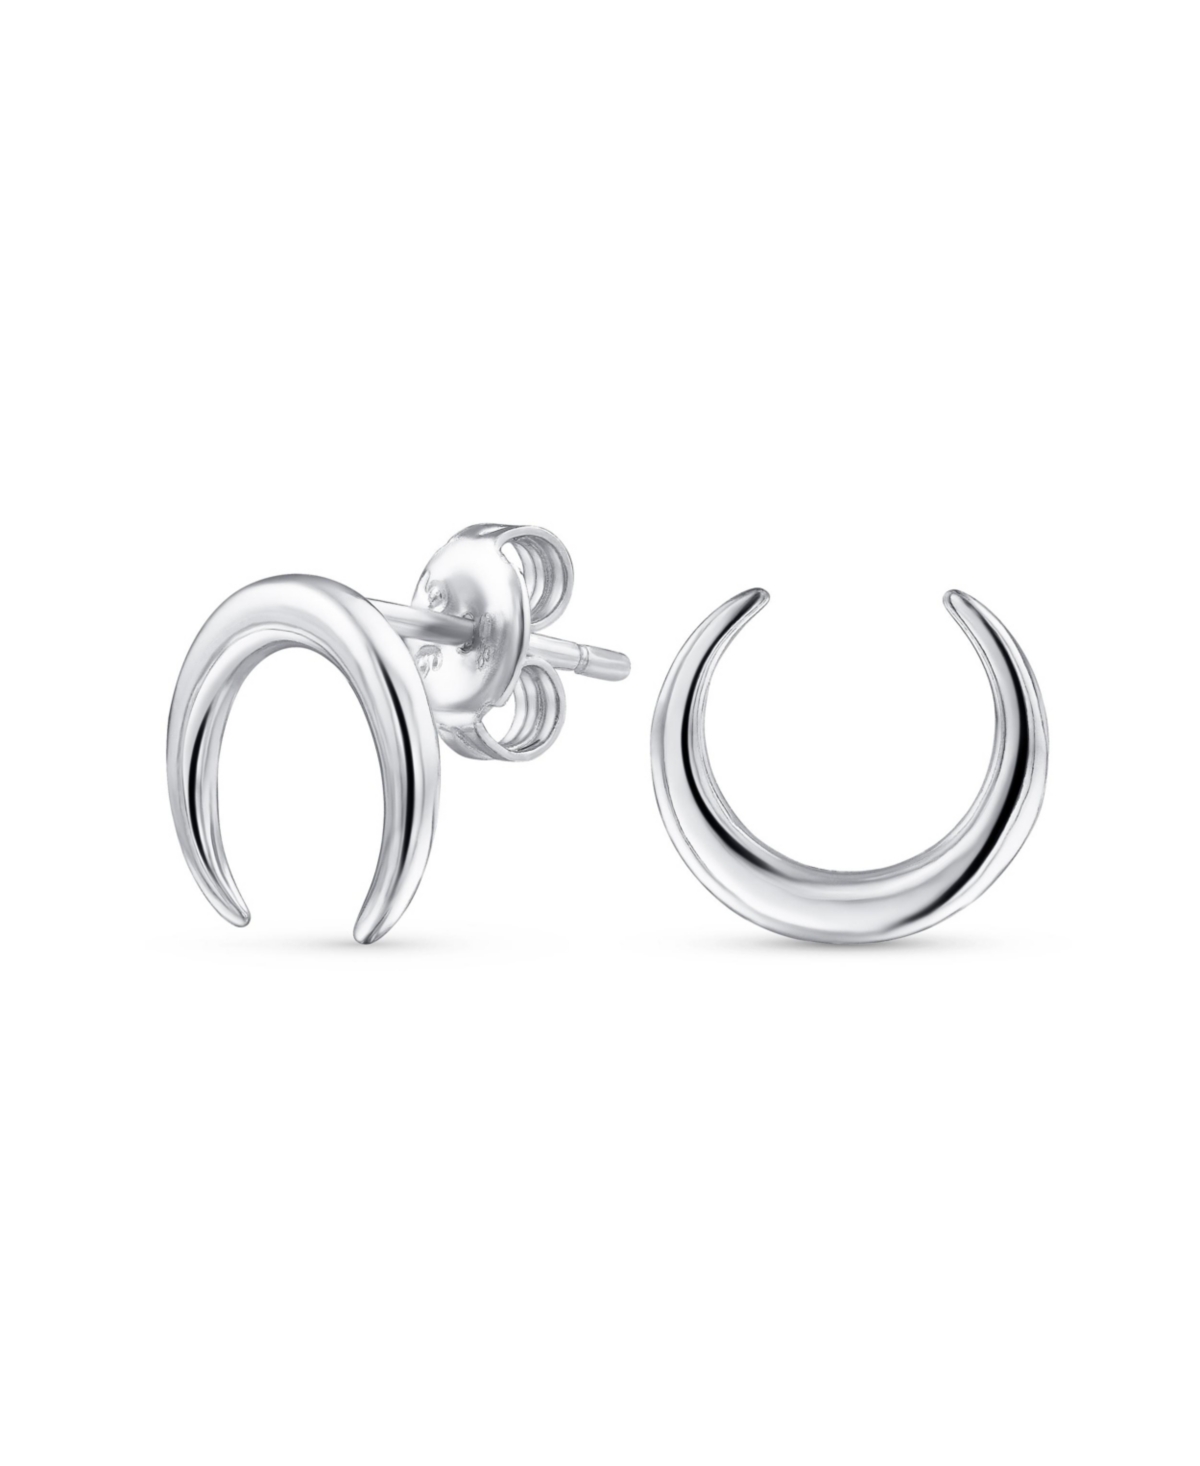 Western Jewelry Tribal Style Minimalist Horn Crescent Luna Waning Half Moon Earrings For Women Teen .925 Sterling Silver - Silver tone